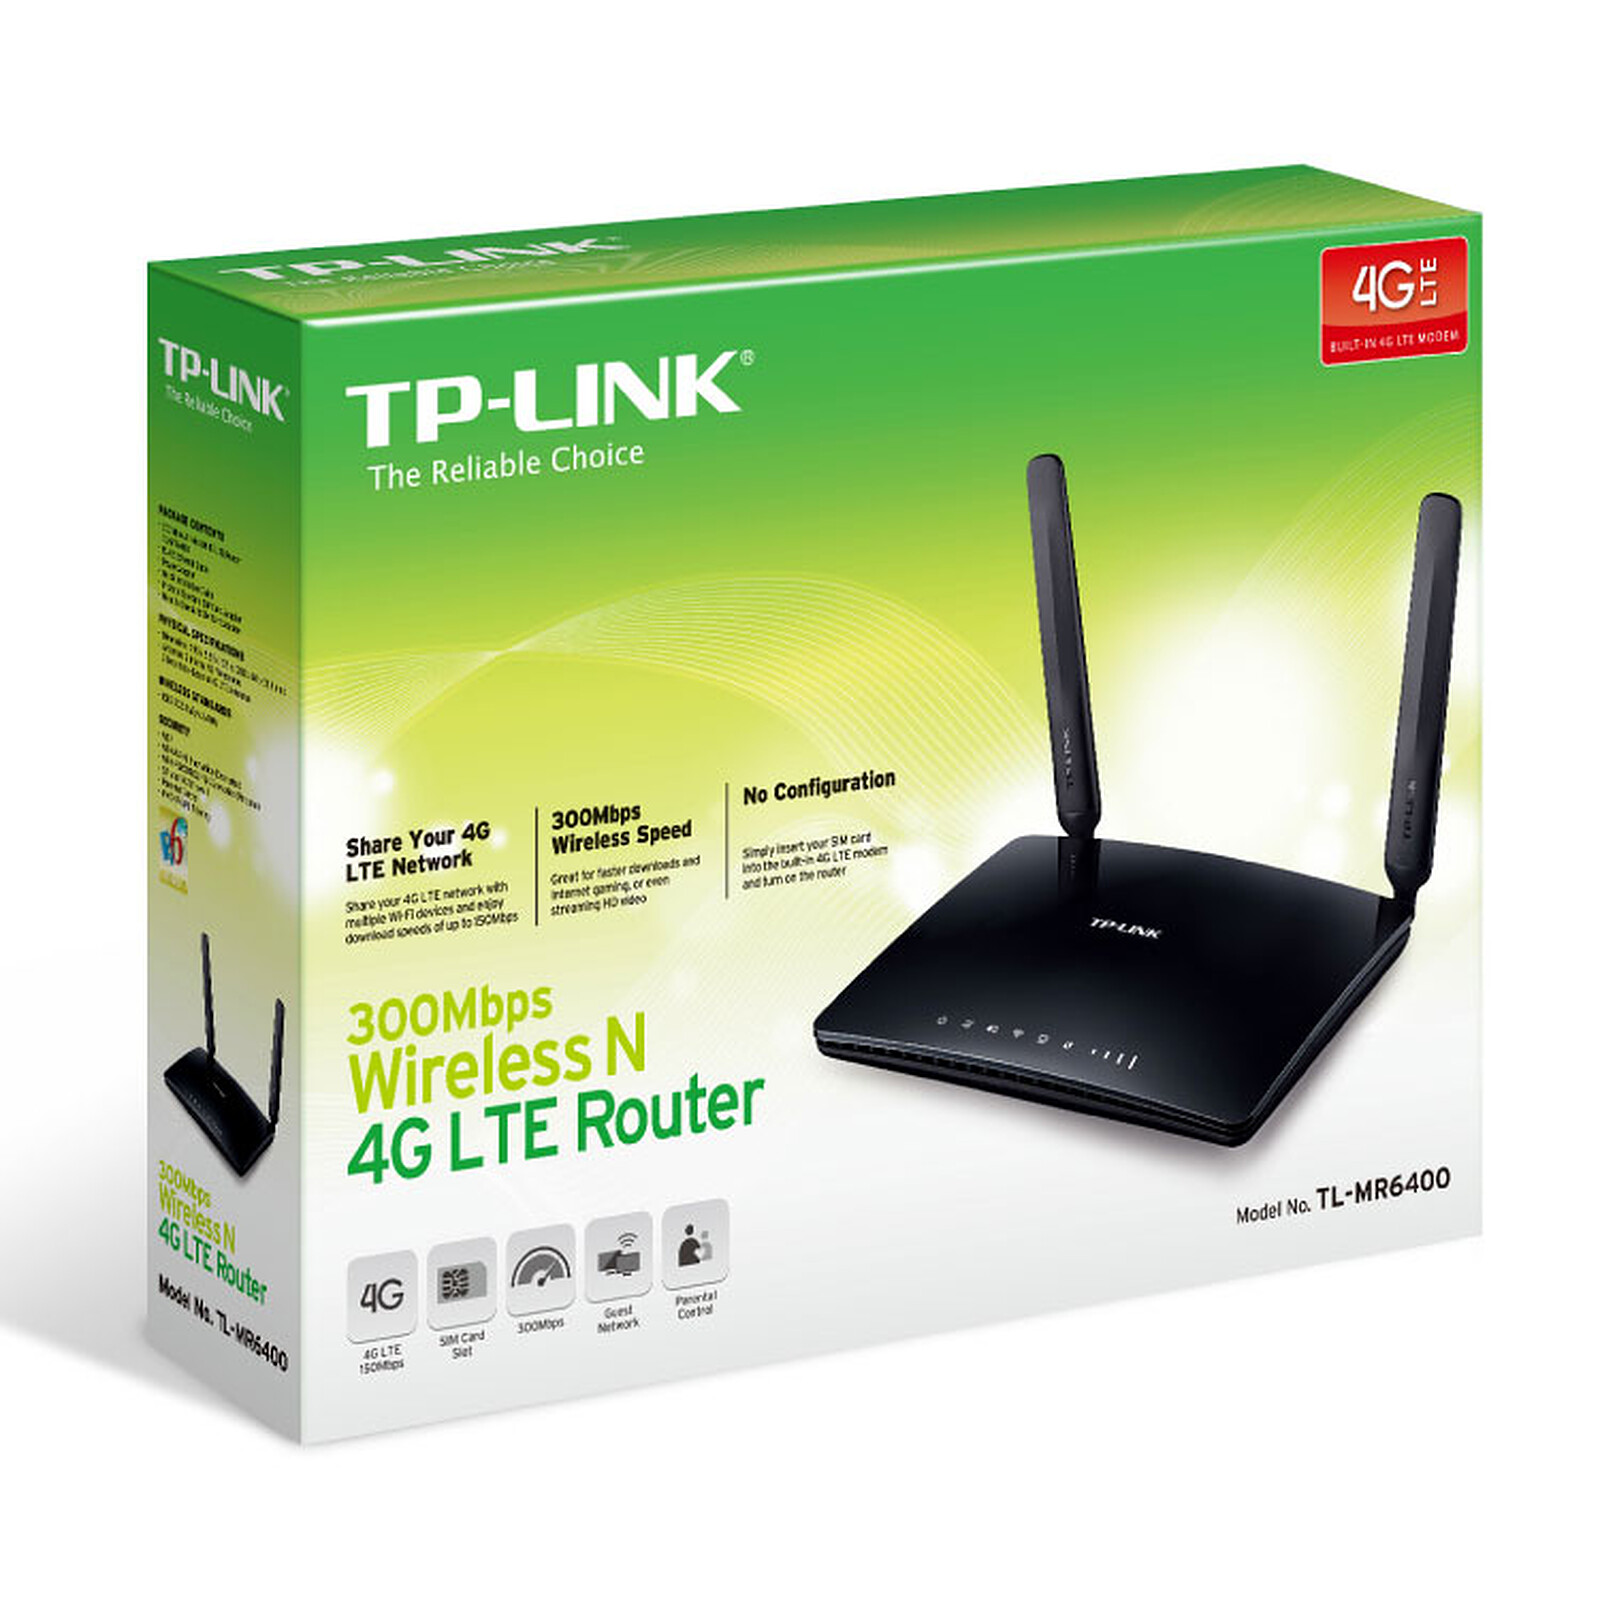 Acheter Routeur WiFi LTE sans fil, carte SIM 4G, 150Mbps, Modem